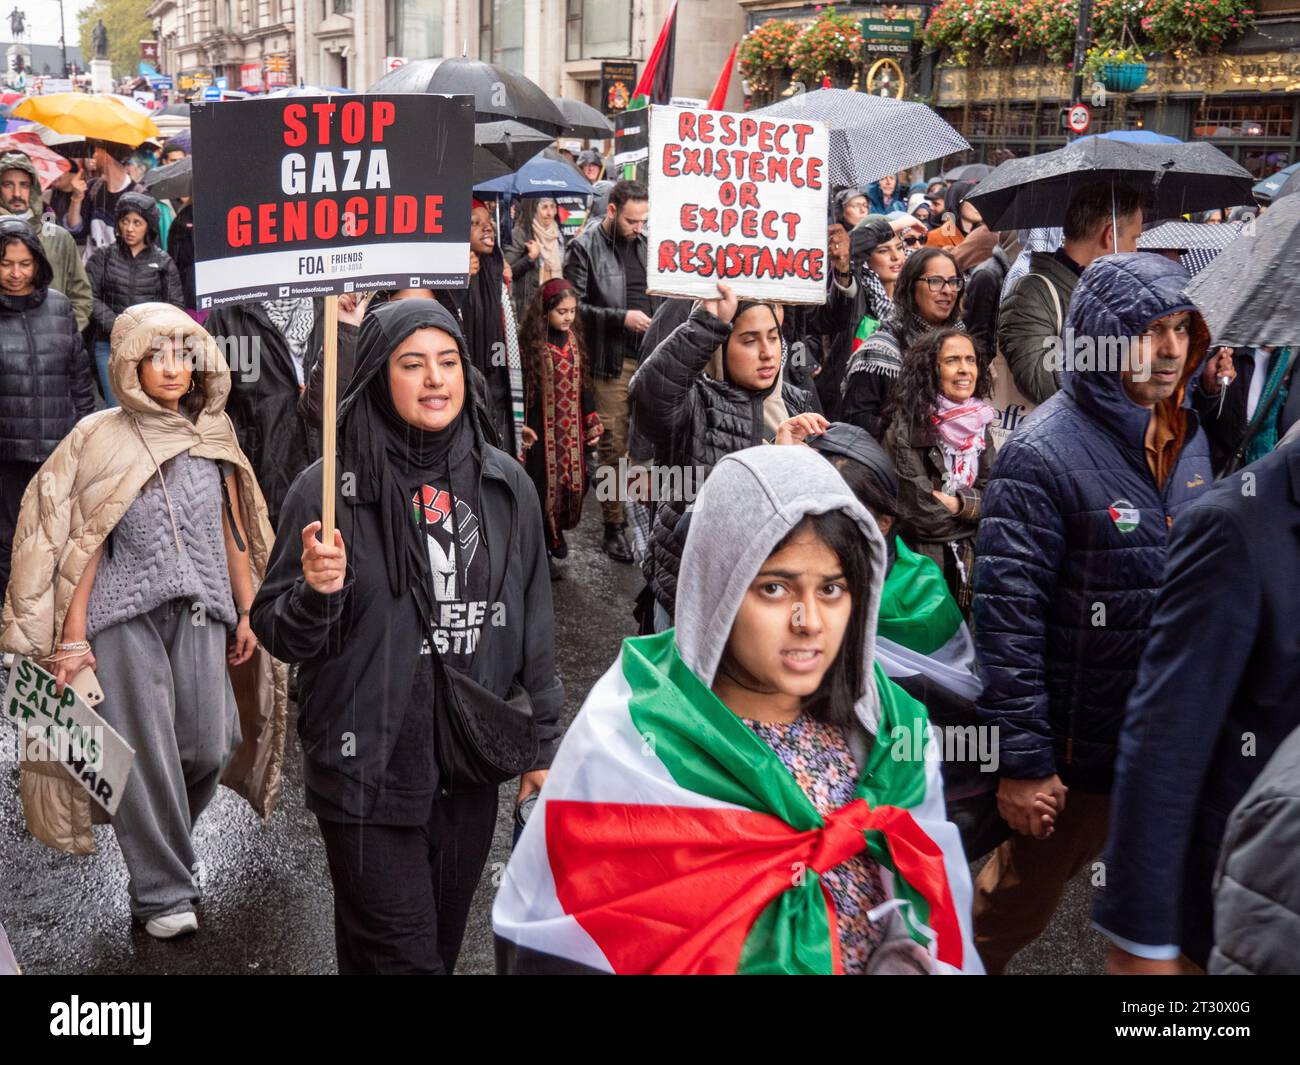 Pro-palästinensische Demonstranten in London, Großbritannien, bei der Demonstration National March for Palestine Stop the war on Gaza, marschieren, um gegen das israelische palästinensische Konfikat über den Gazastreifen zu protestieren. Demonstranten marschieren mit Plakaten zur Downing Street. Stockfoto